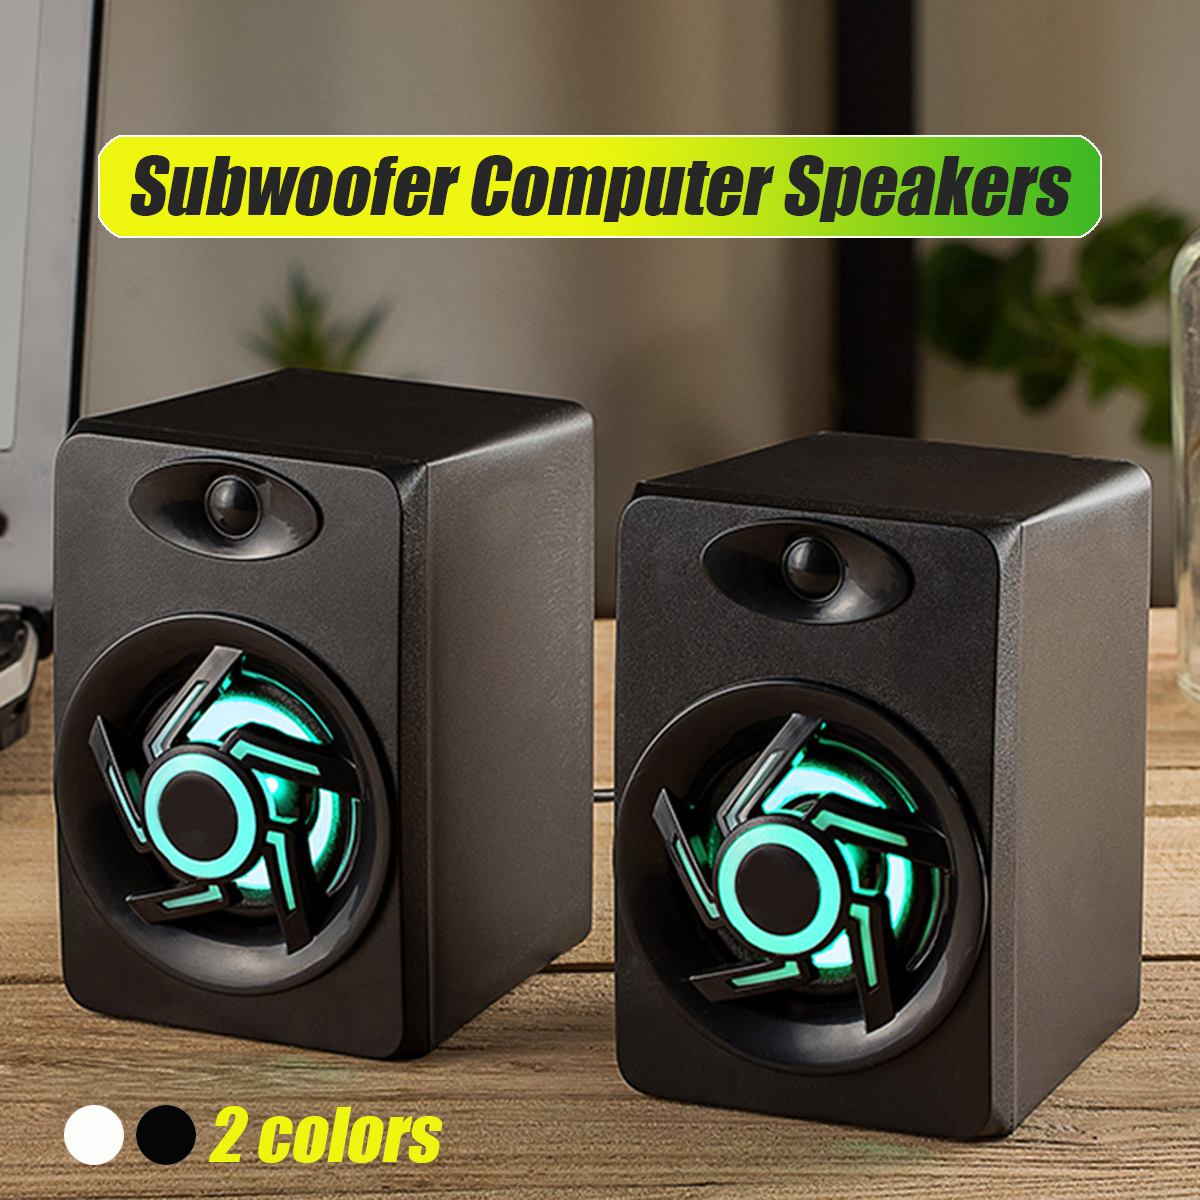 Mini-Portable-USB-Muit-Colorful-Light-Computer-Subwoofer-Speaker-for-Desktop-Laptop-PC-MP3-Cell-phon-1617855-2